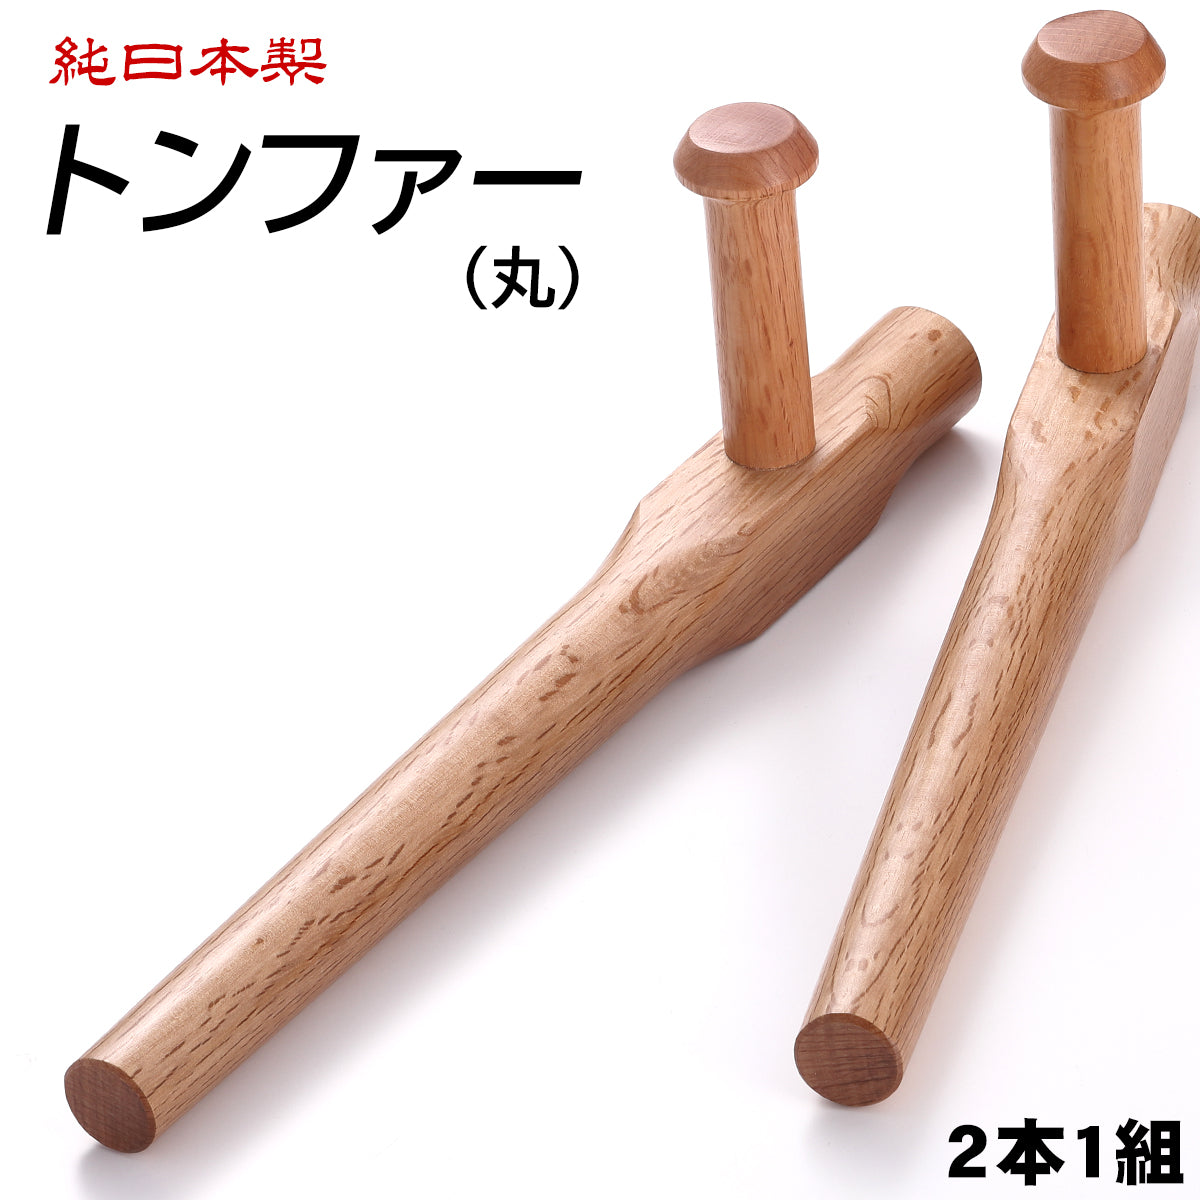 赤樫 トンファー 丸型 – 西日本武道具